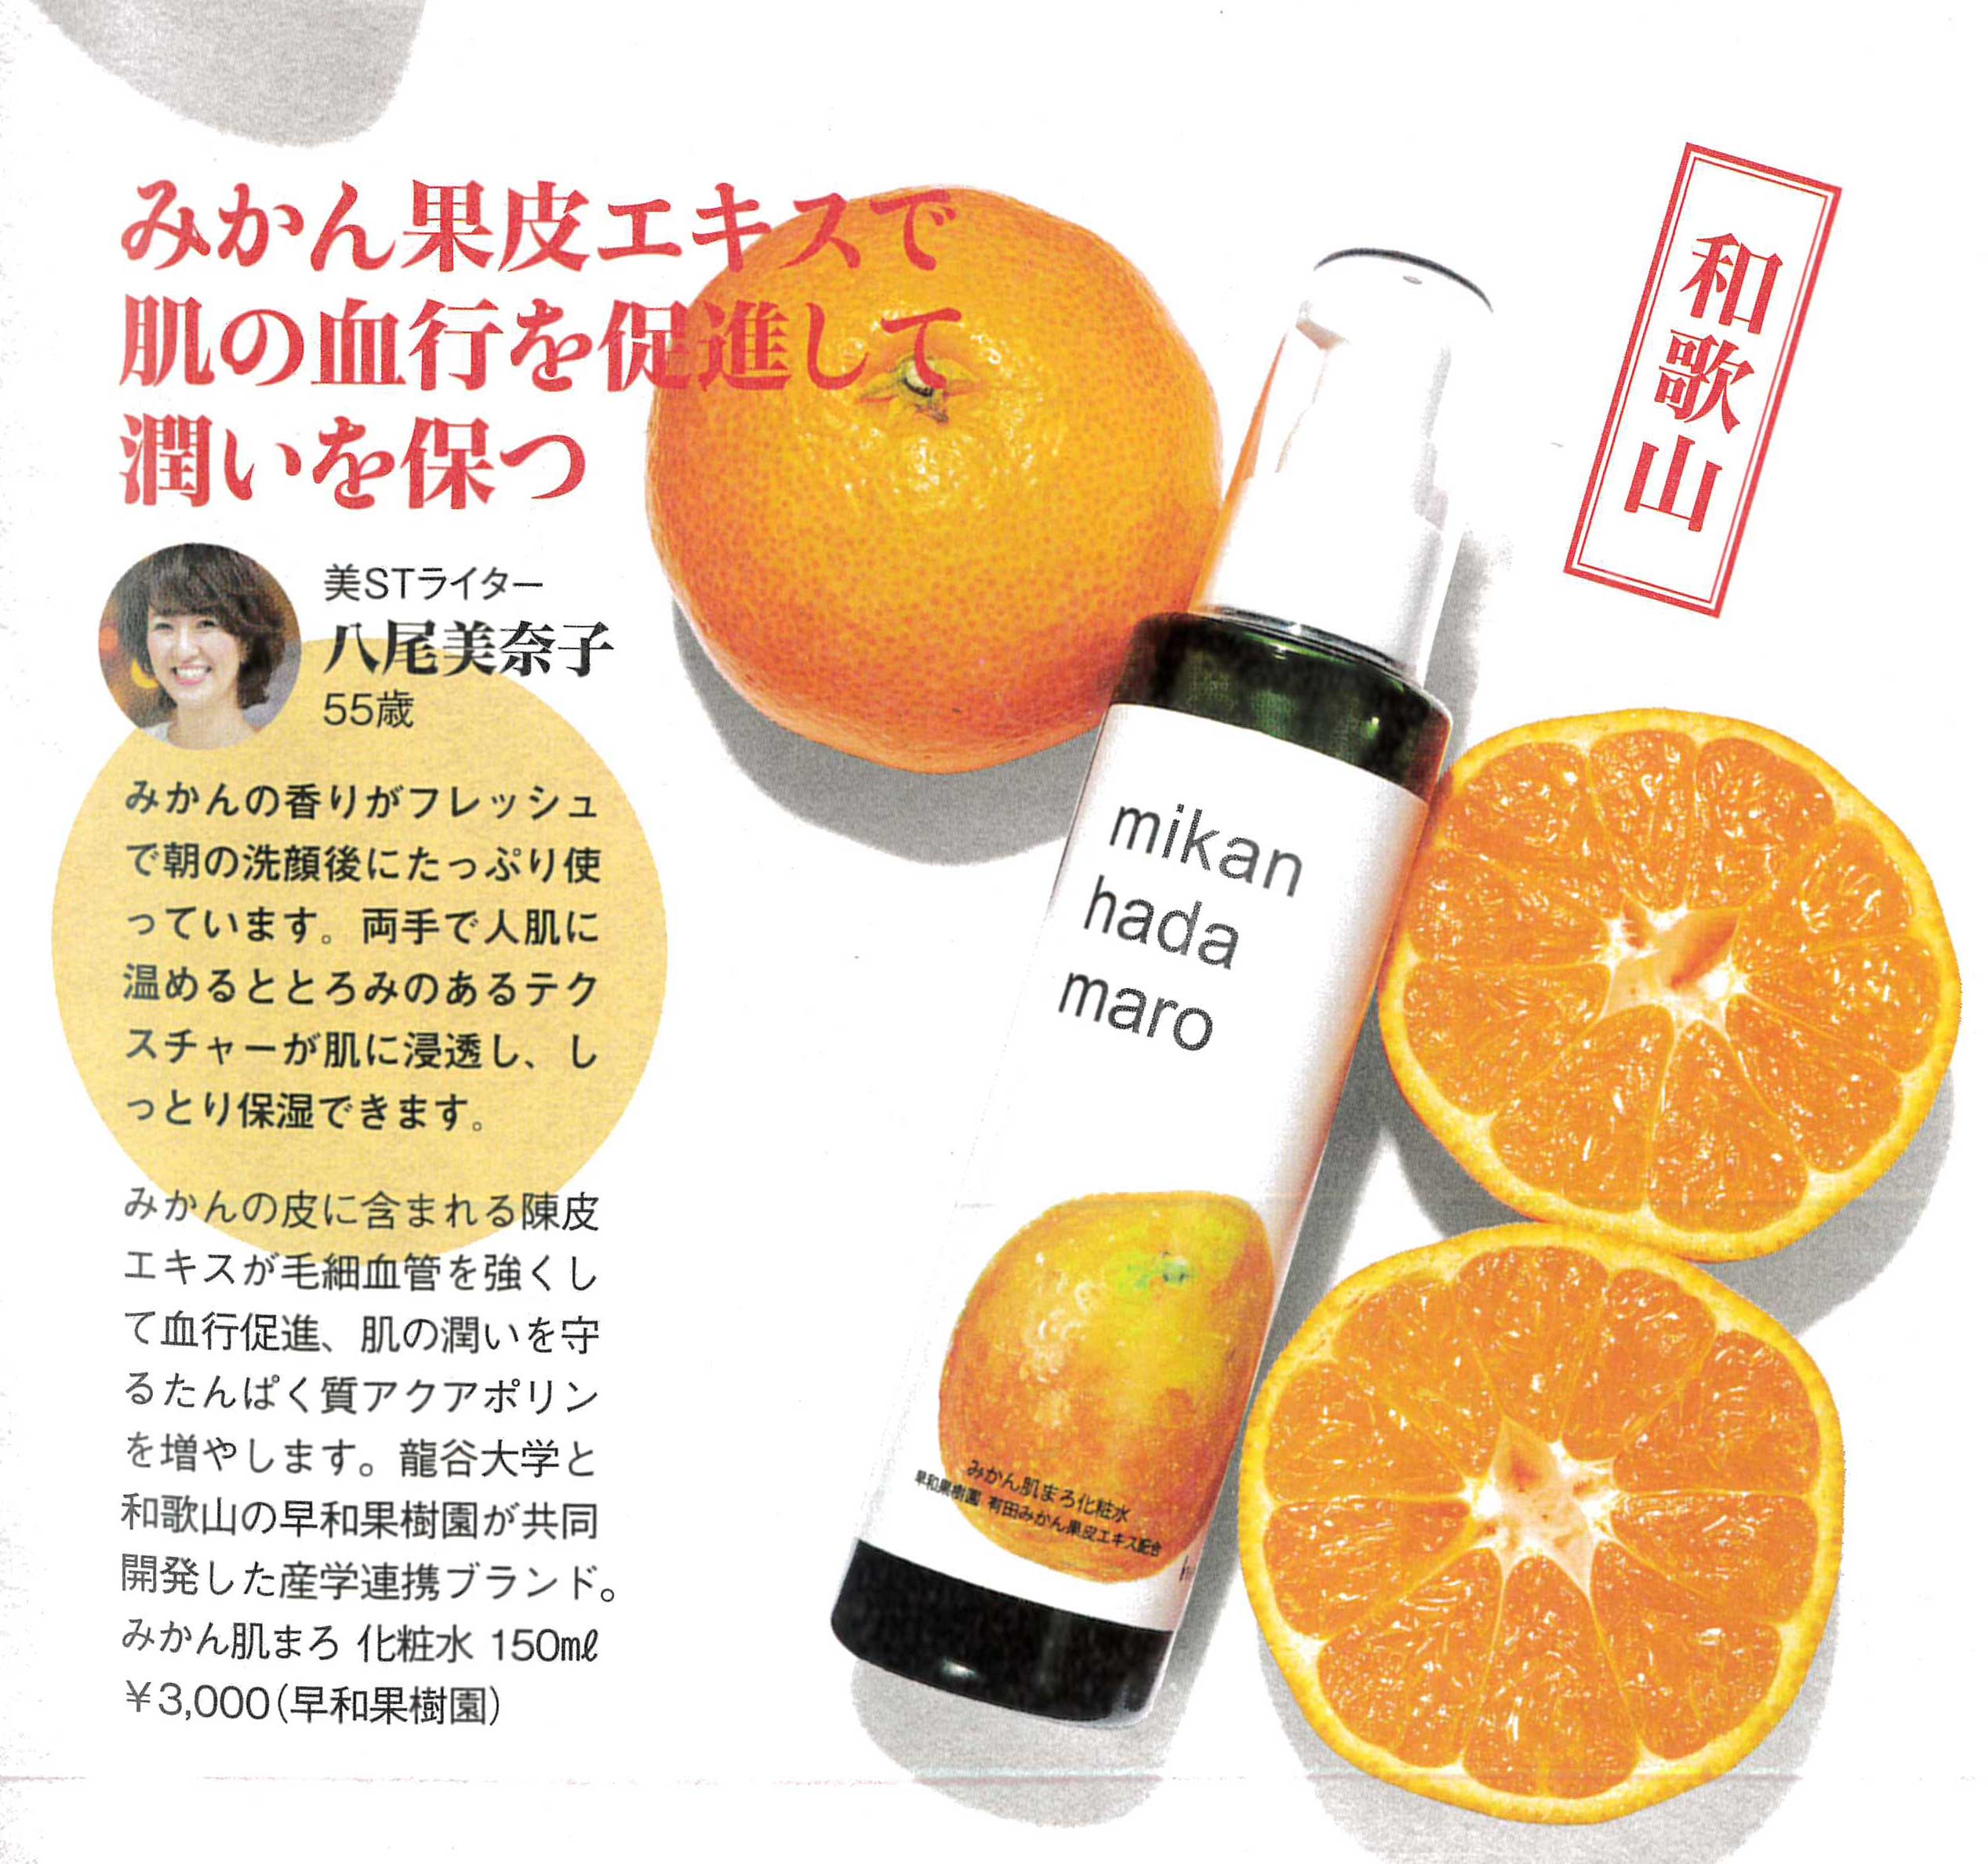 早和果樹園のみかん肌まろ化粧水の紹介を美STライターさんが紹介してくれています。